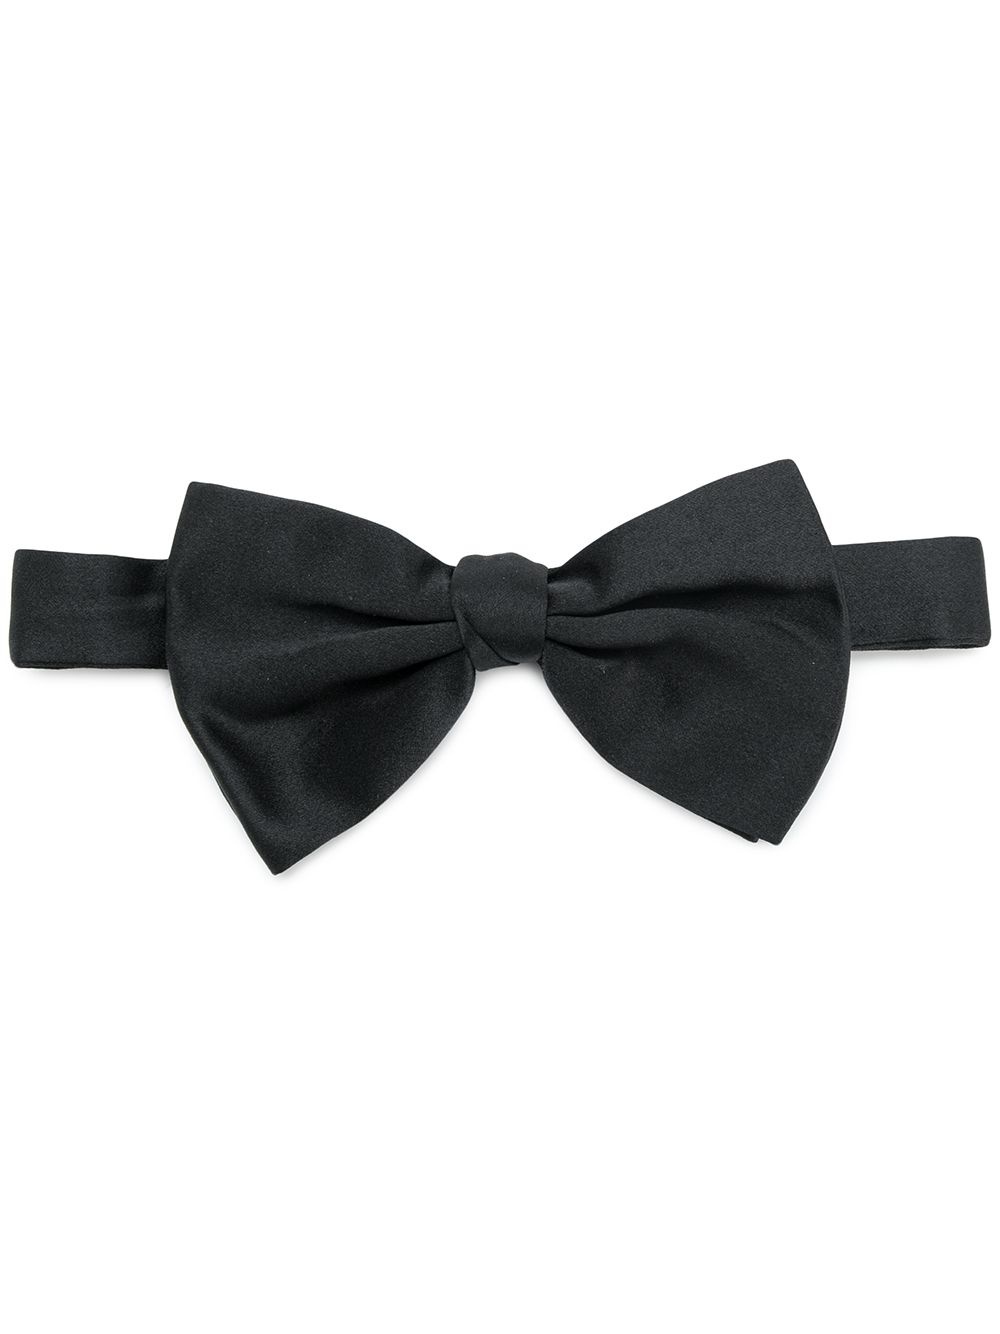 classic bow tie - 1